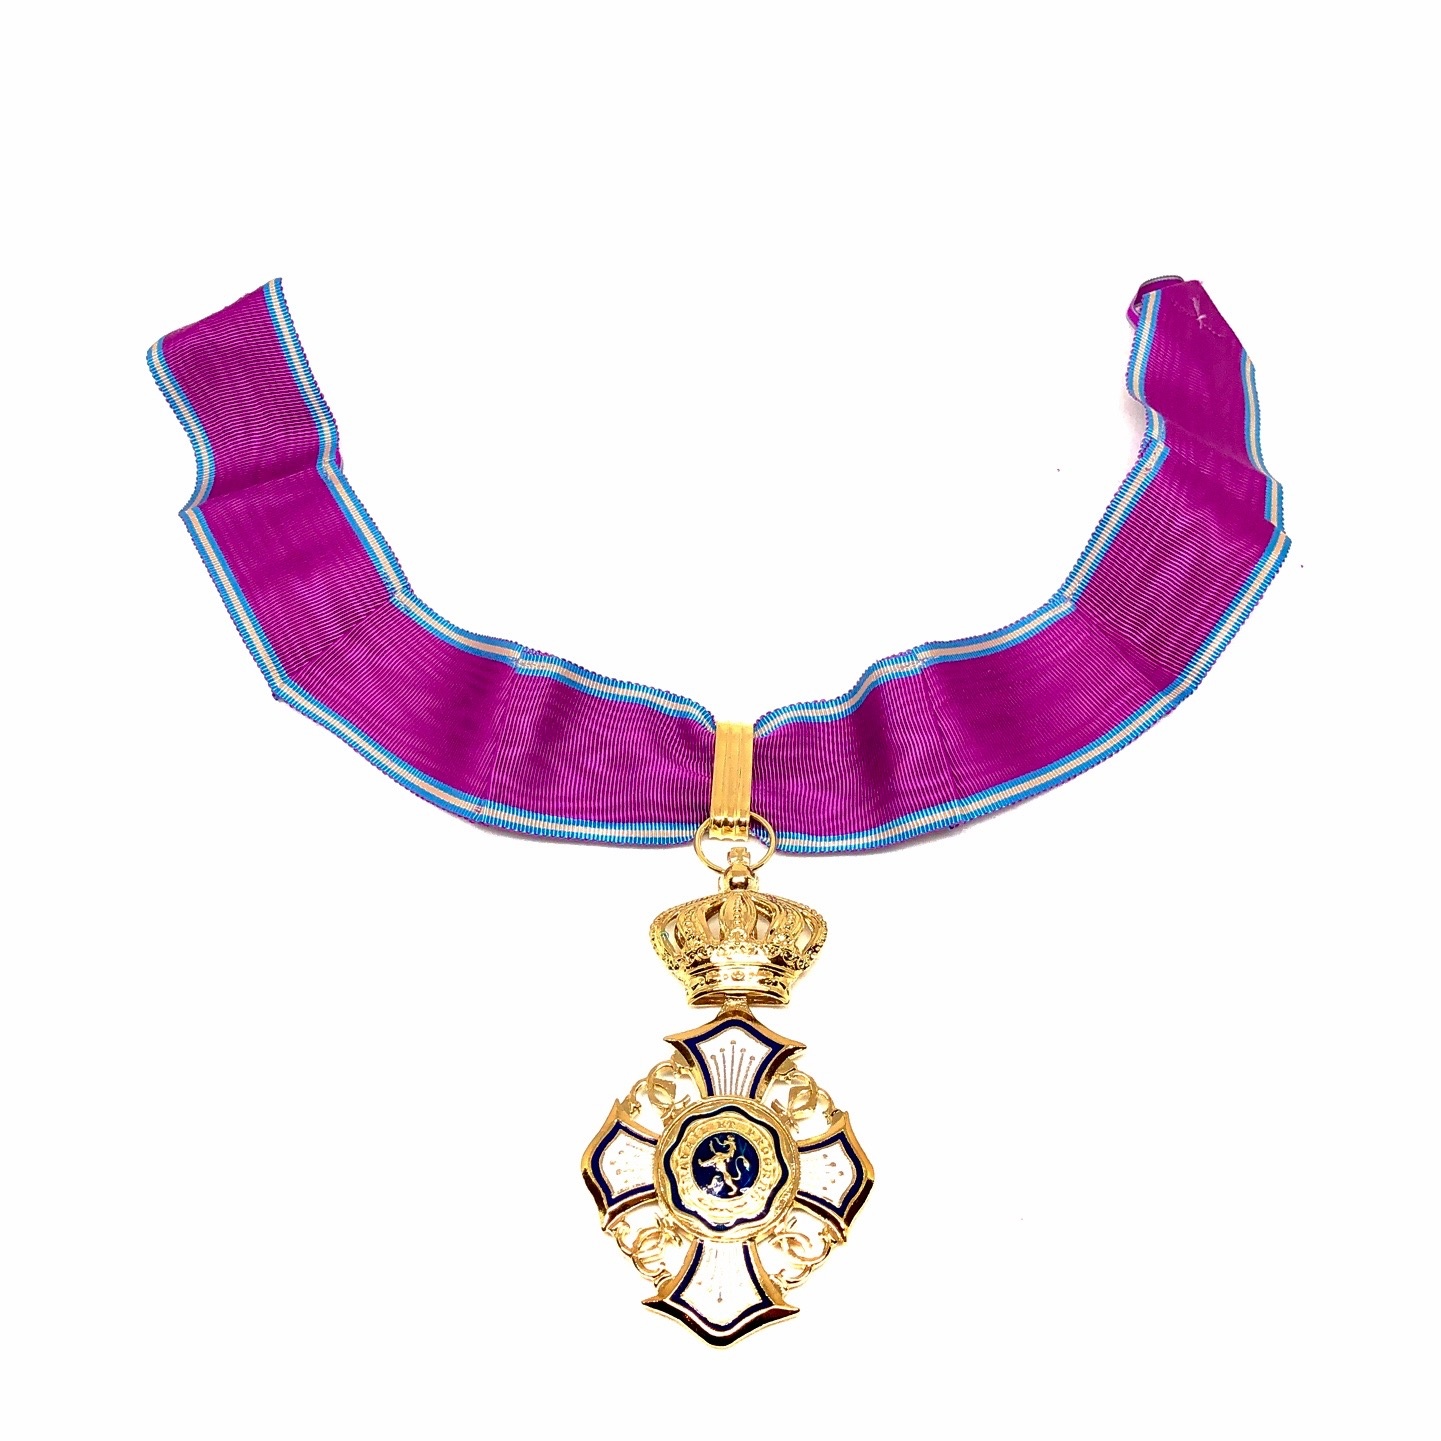 Commandeur in de Koninklijke Orde van de Leeuw